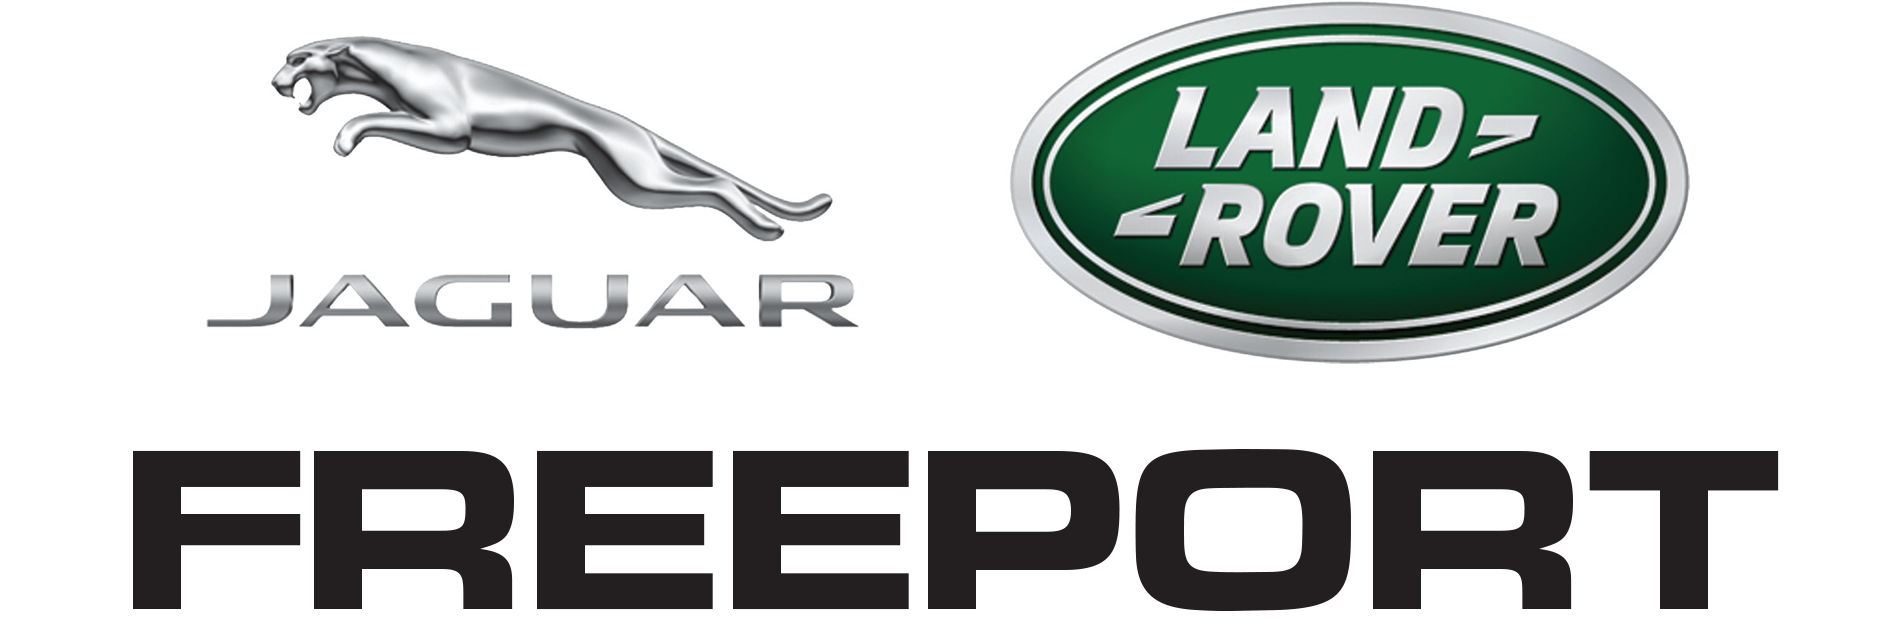 Jaguar Landrover Freeport